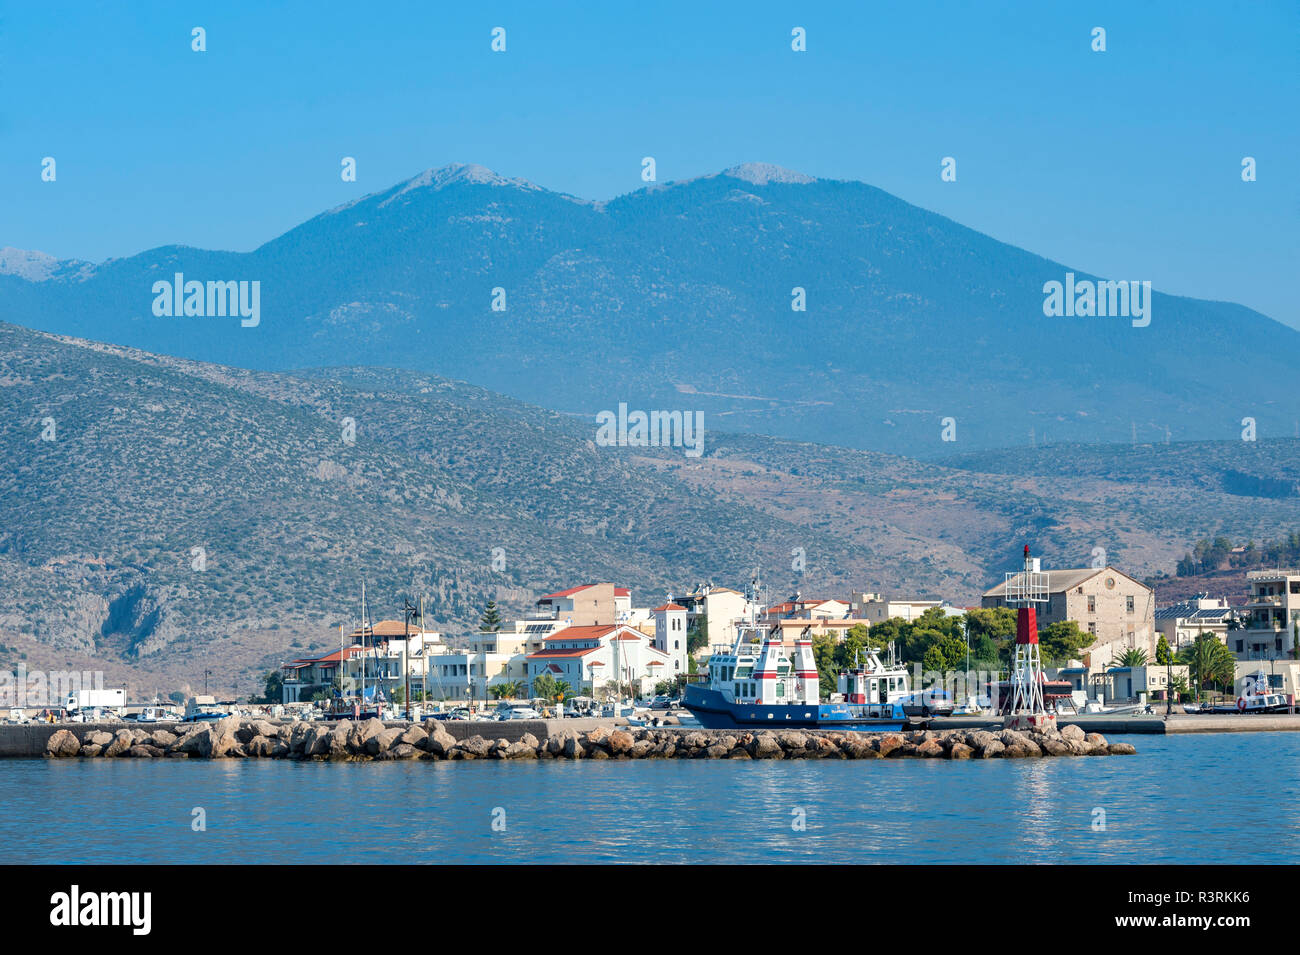 Marina in Gulf of Corinth, Itea, Greece, Europe Stock Photo